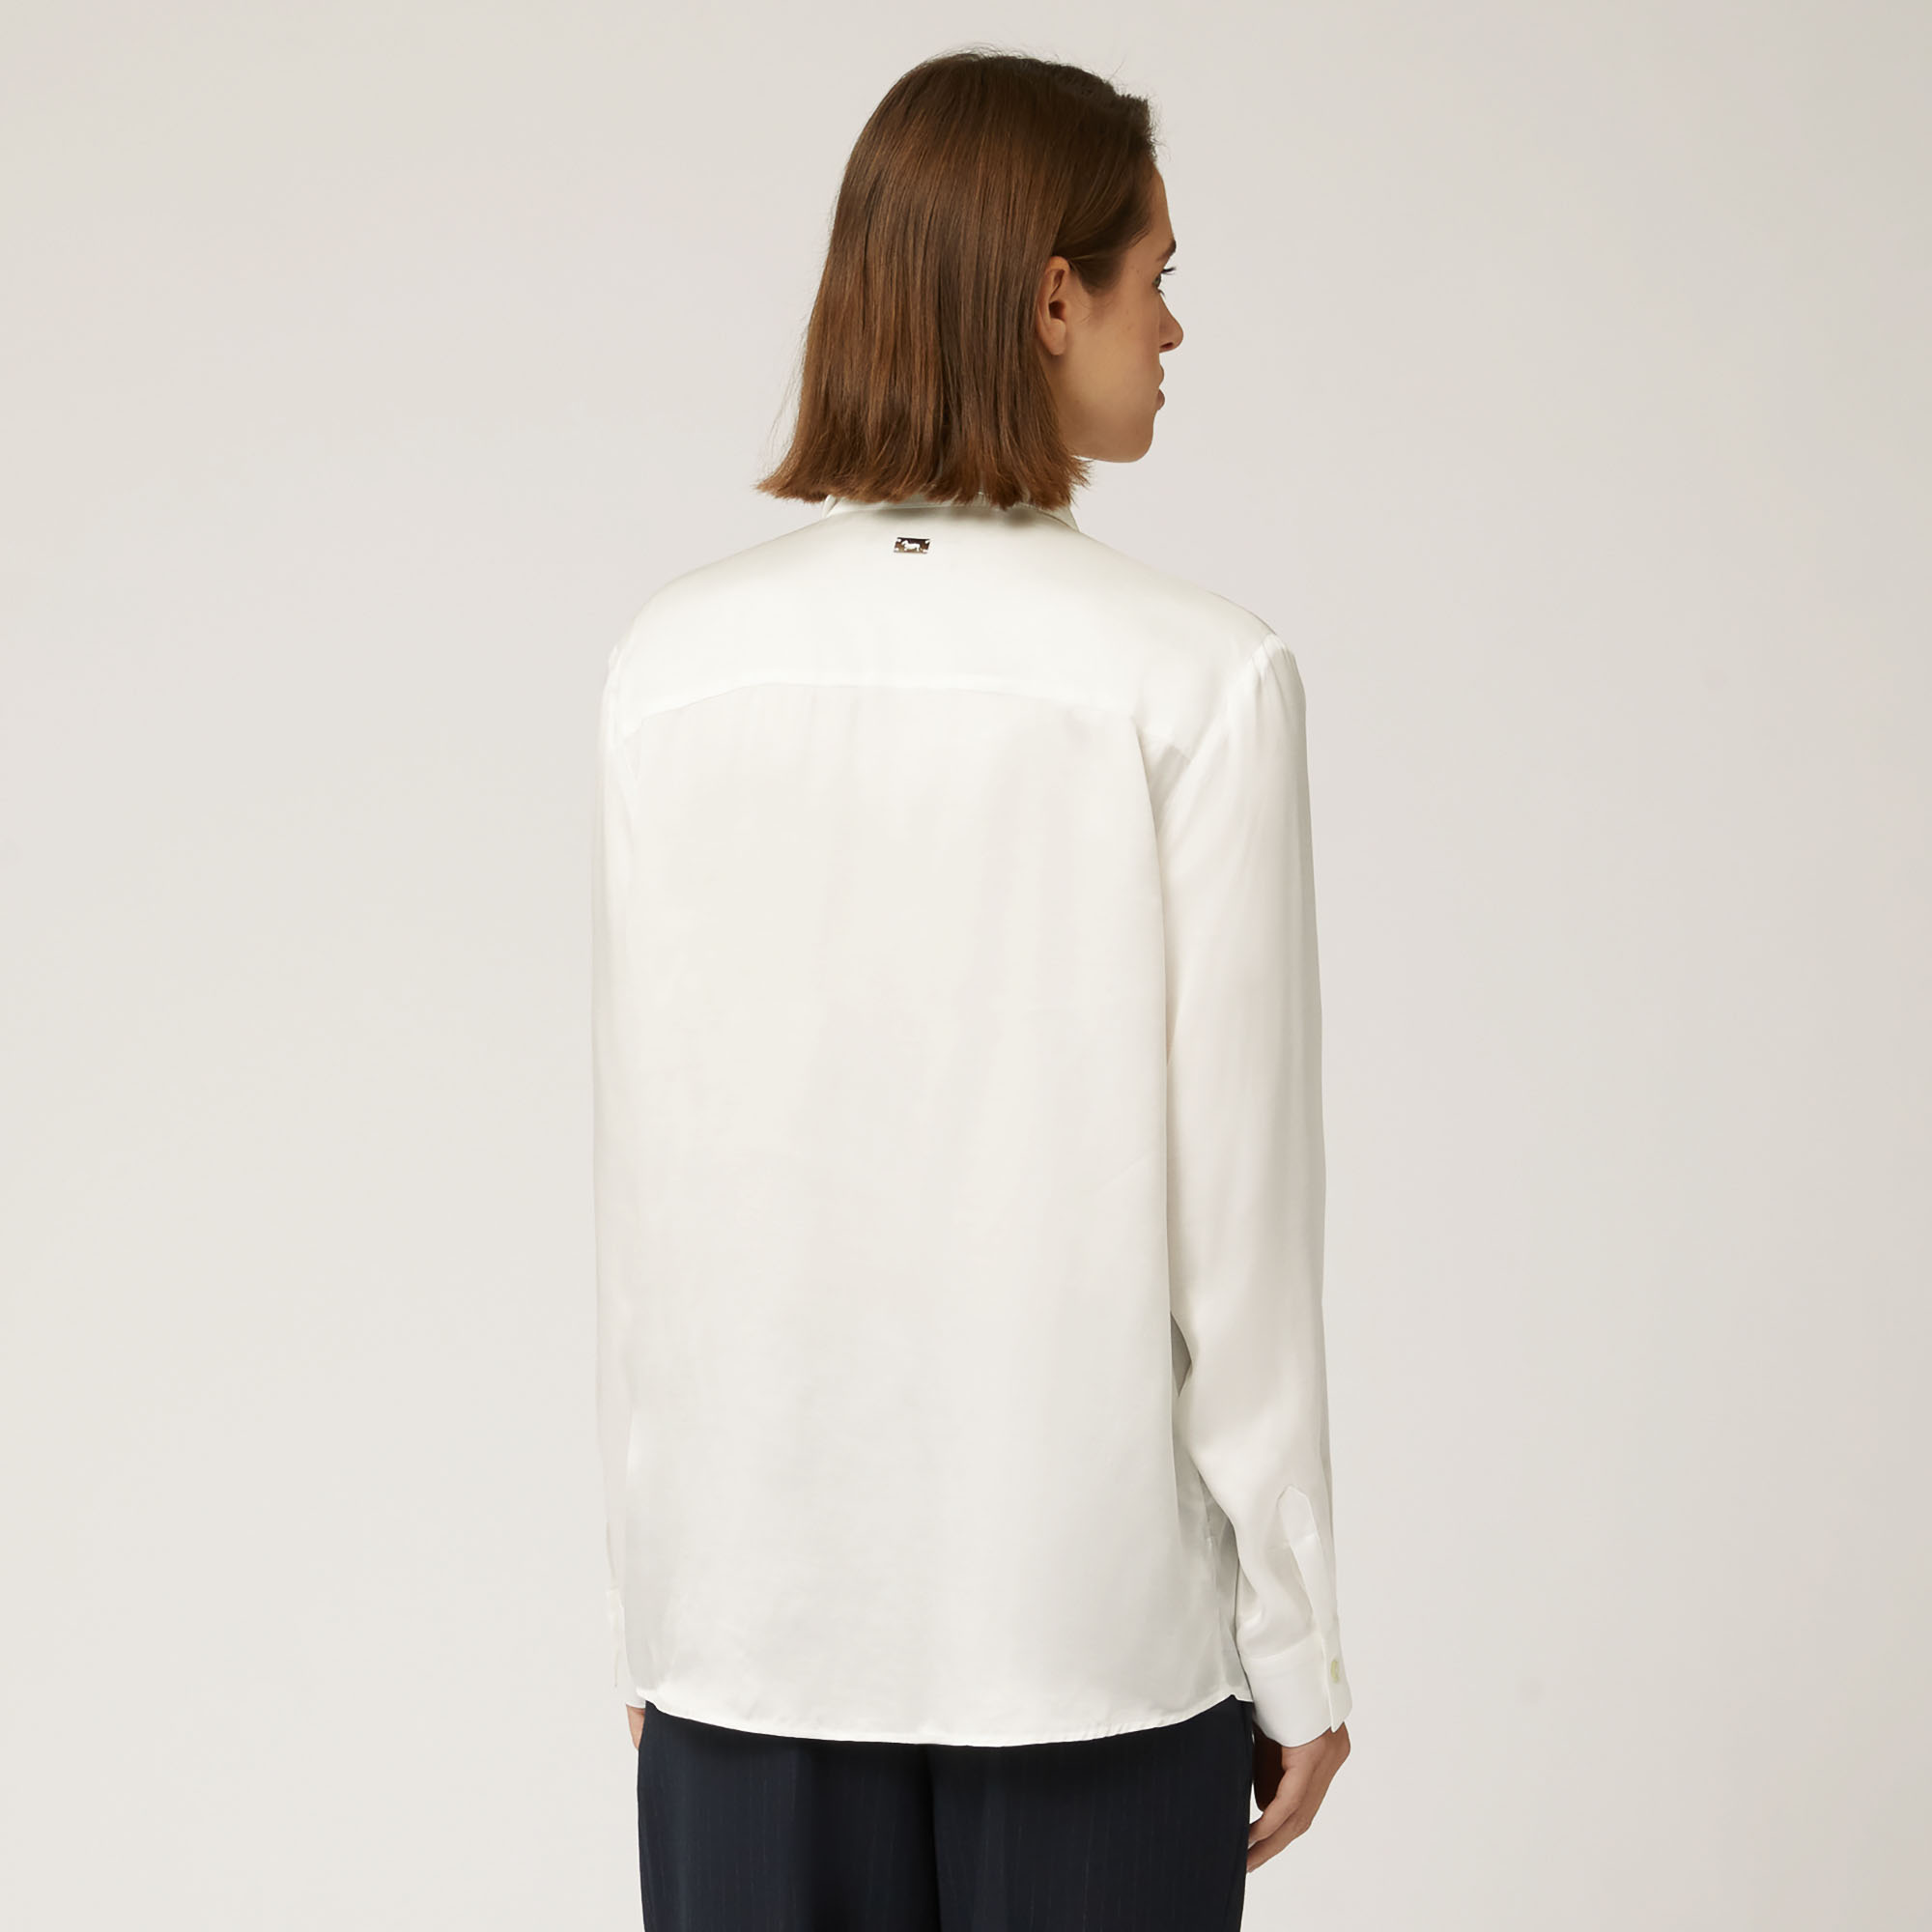 Soft Viscose Shirt, White, large image number 1